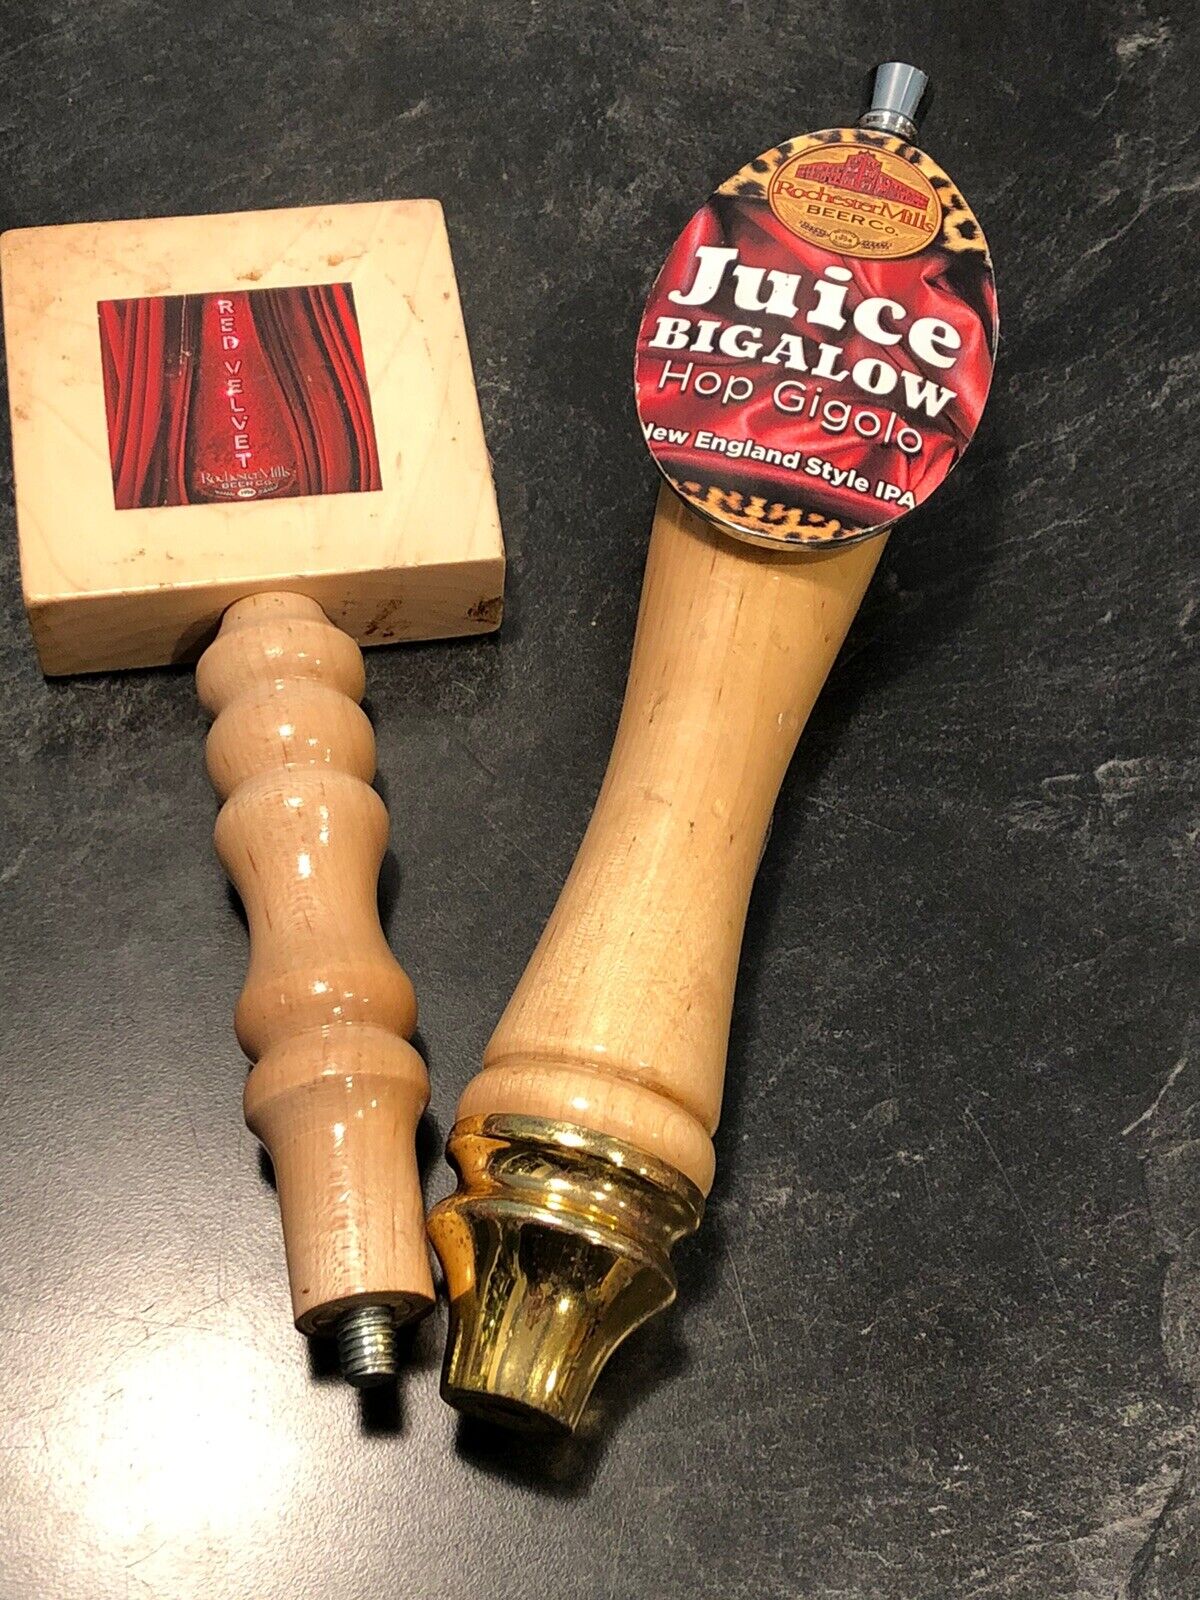 ROCHESTER MILLS Juice Bigalow, Red Velvet beer tap handle (2)Rochester, Michigan